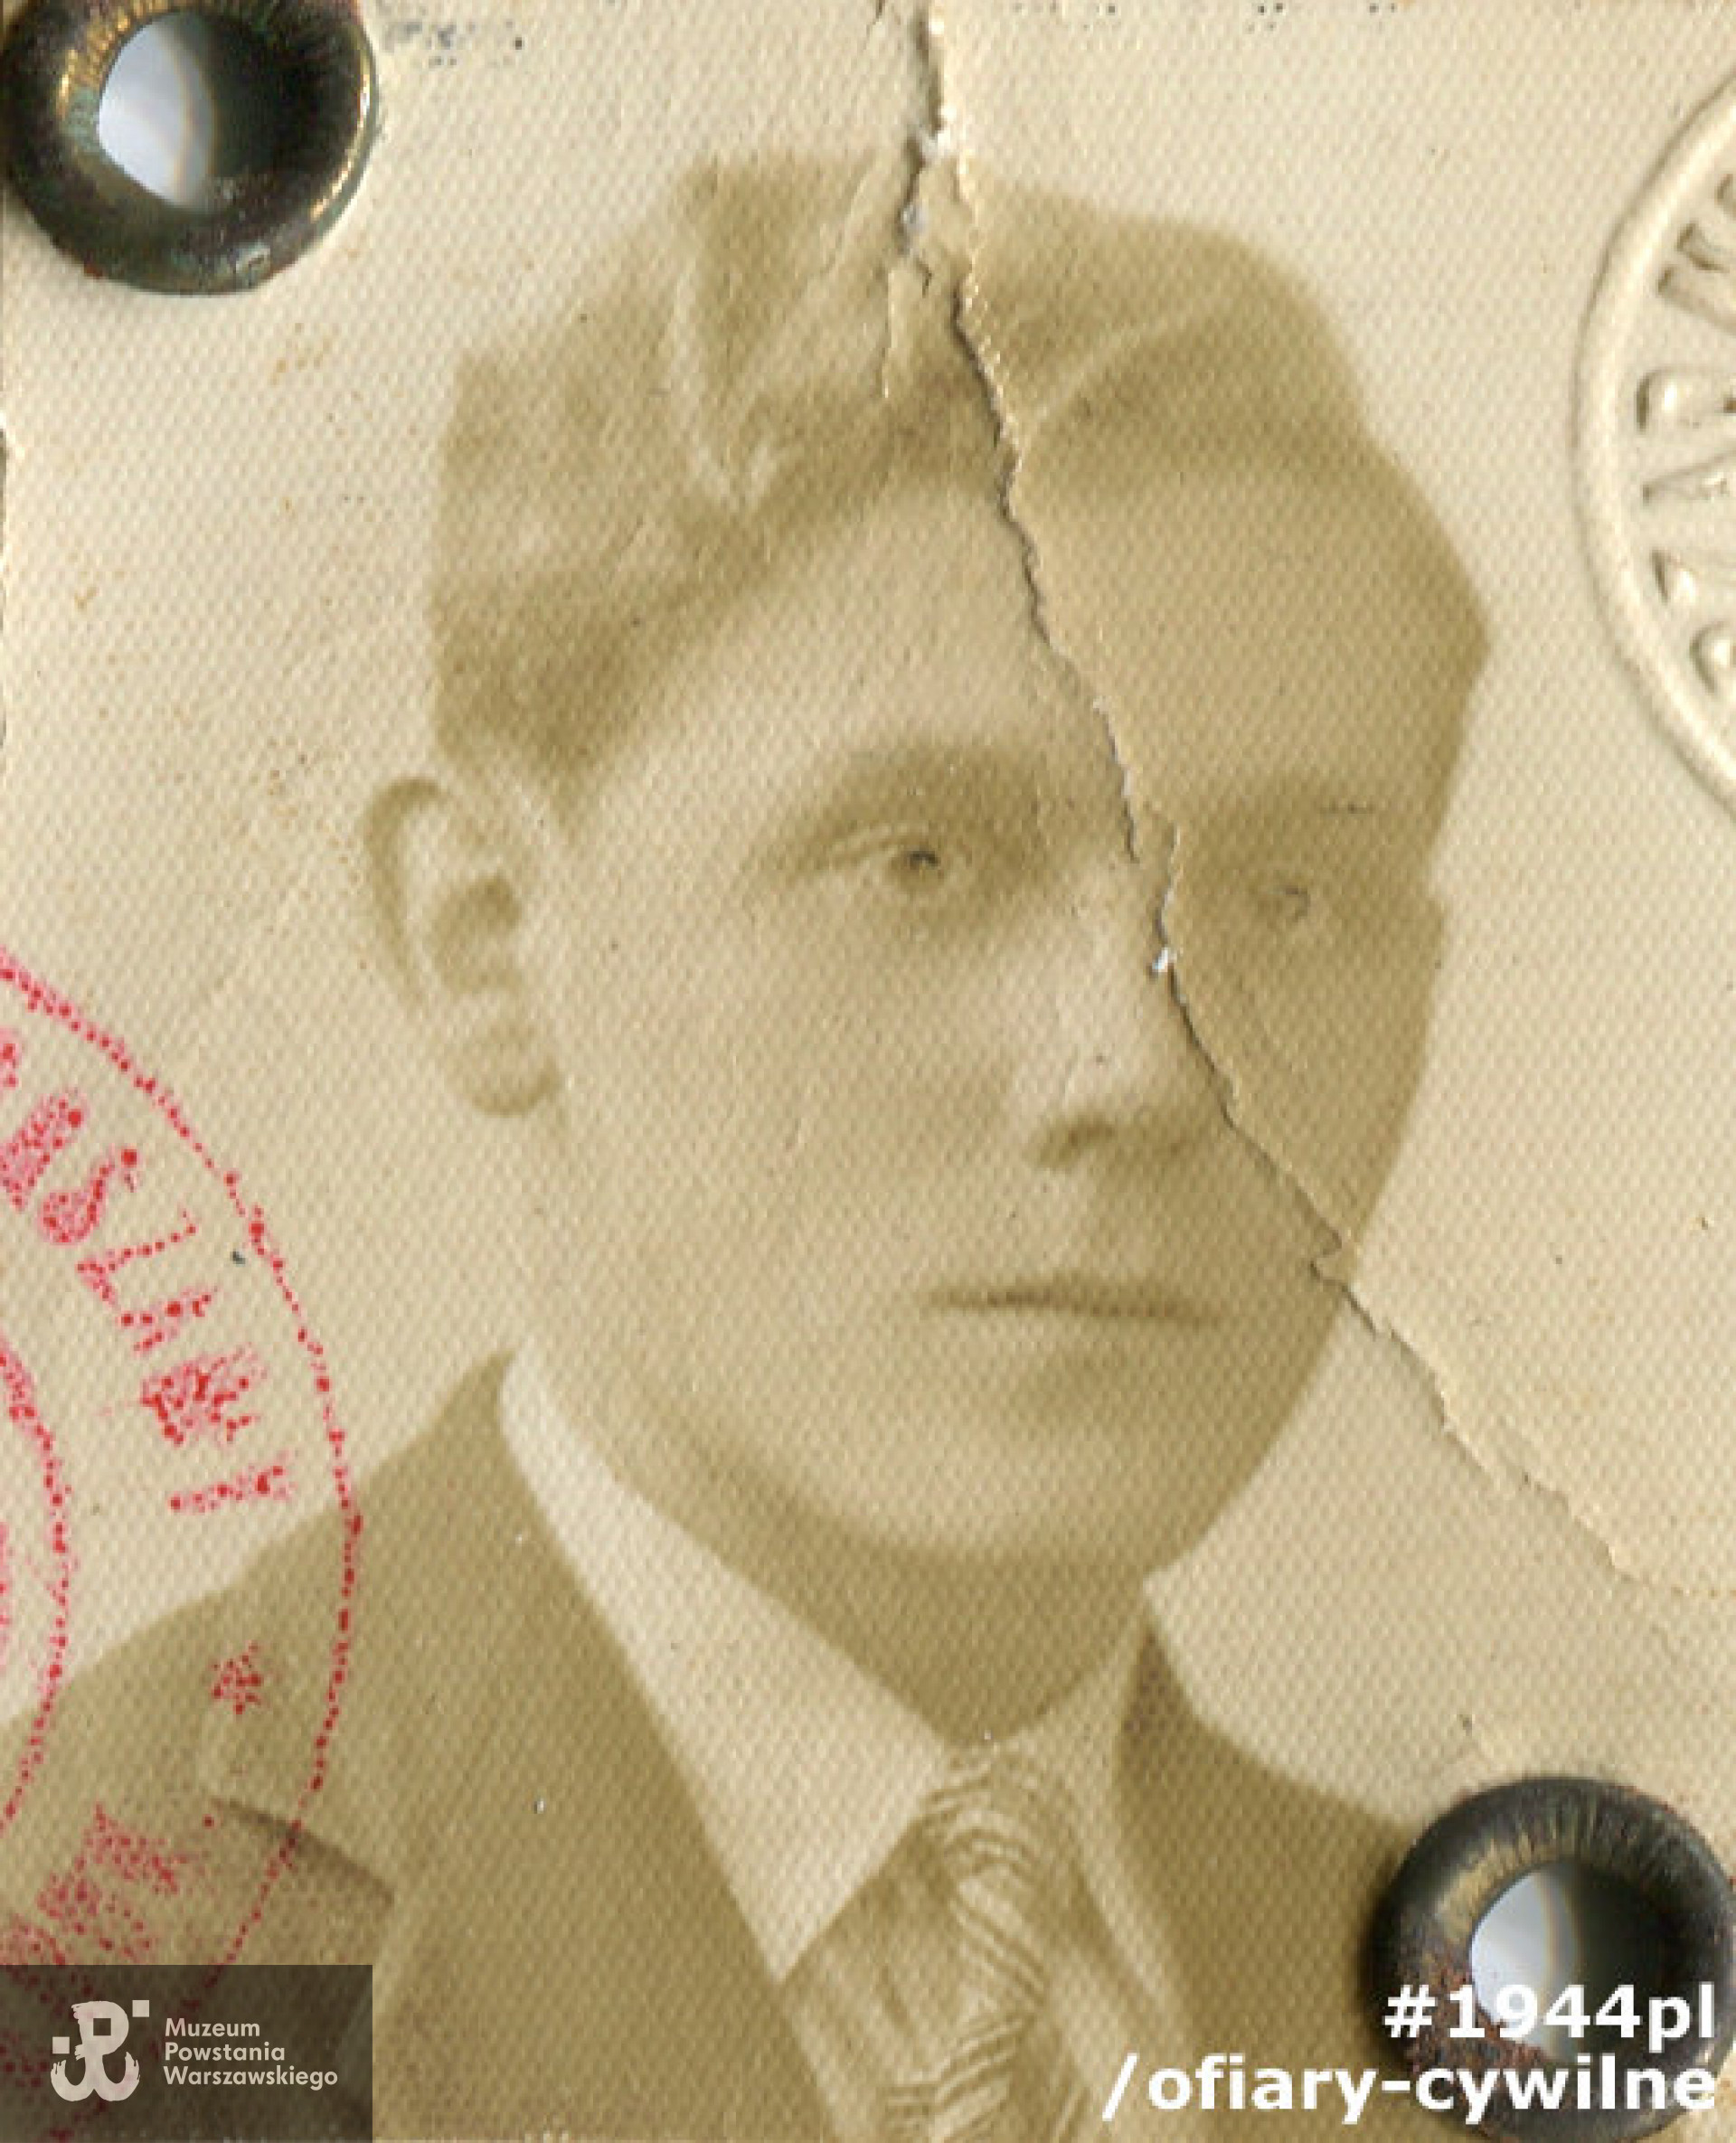 Edward Biejat (1914-1944), fotografia z przedwojennego dowodu osobistego, zbiory Muzeum Powstania Warszawskiego MPW-A-3433 (P/2178)